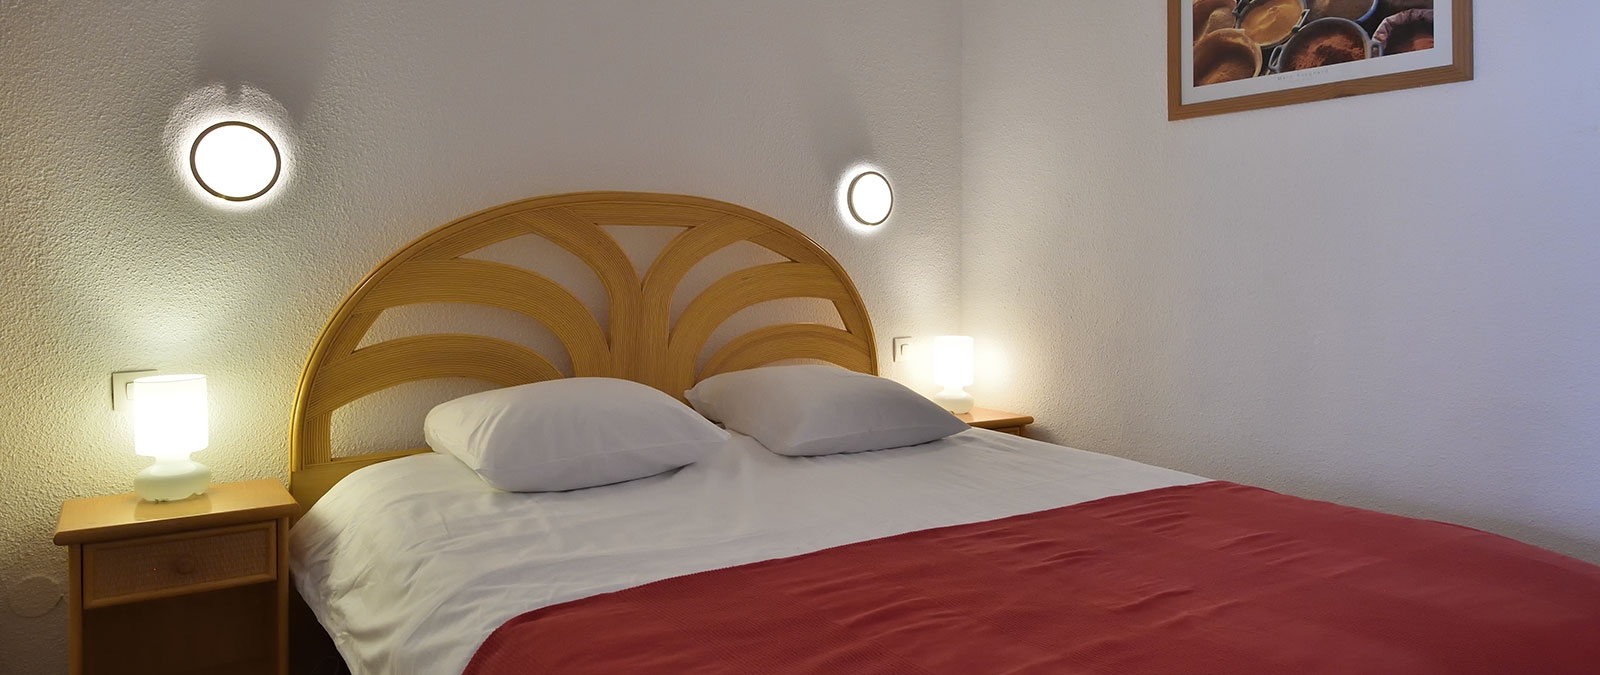 Schlaf-Ecke mit 160-cm-Bett Mietwohnung FKK-Apartment Lounge